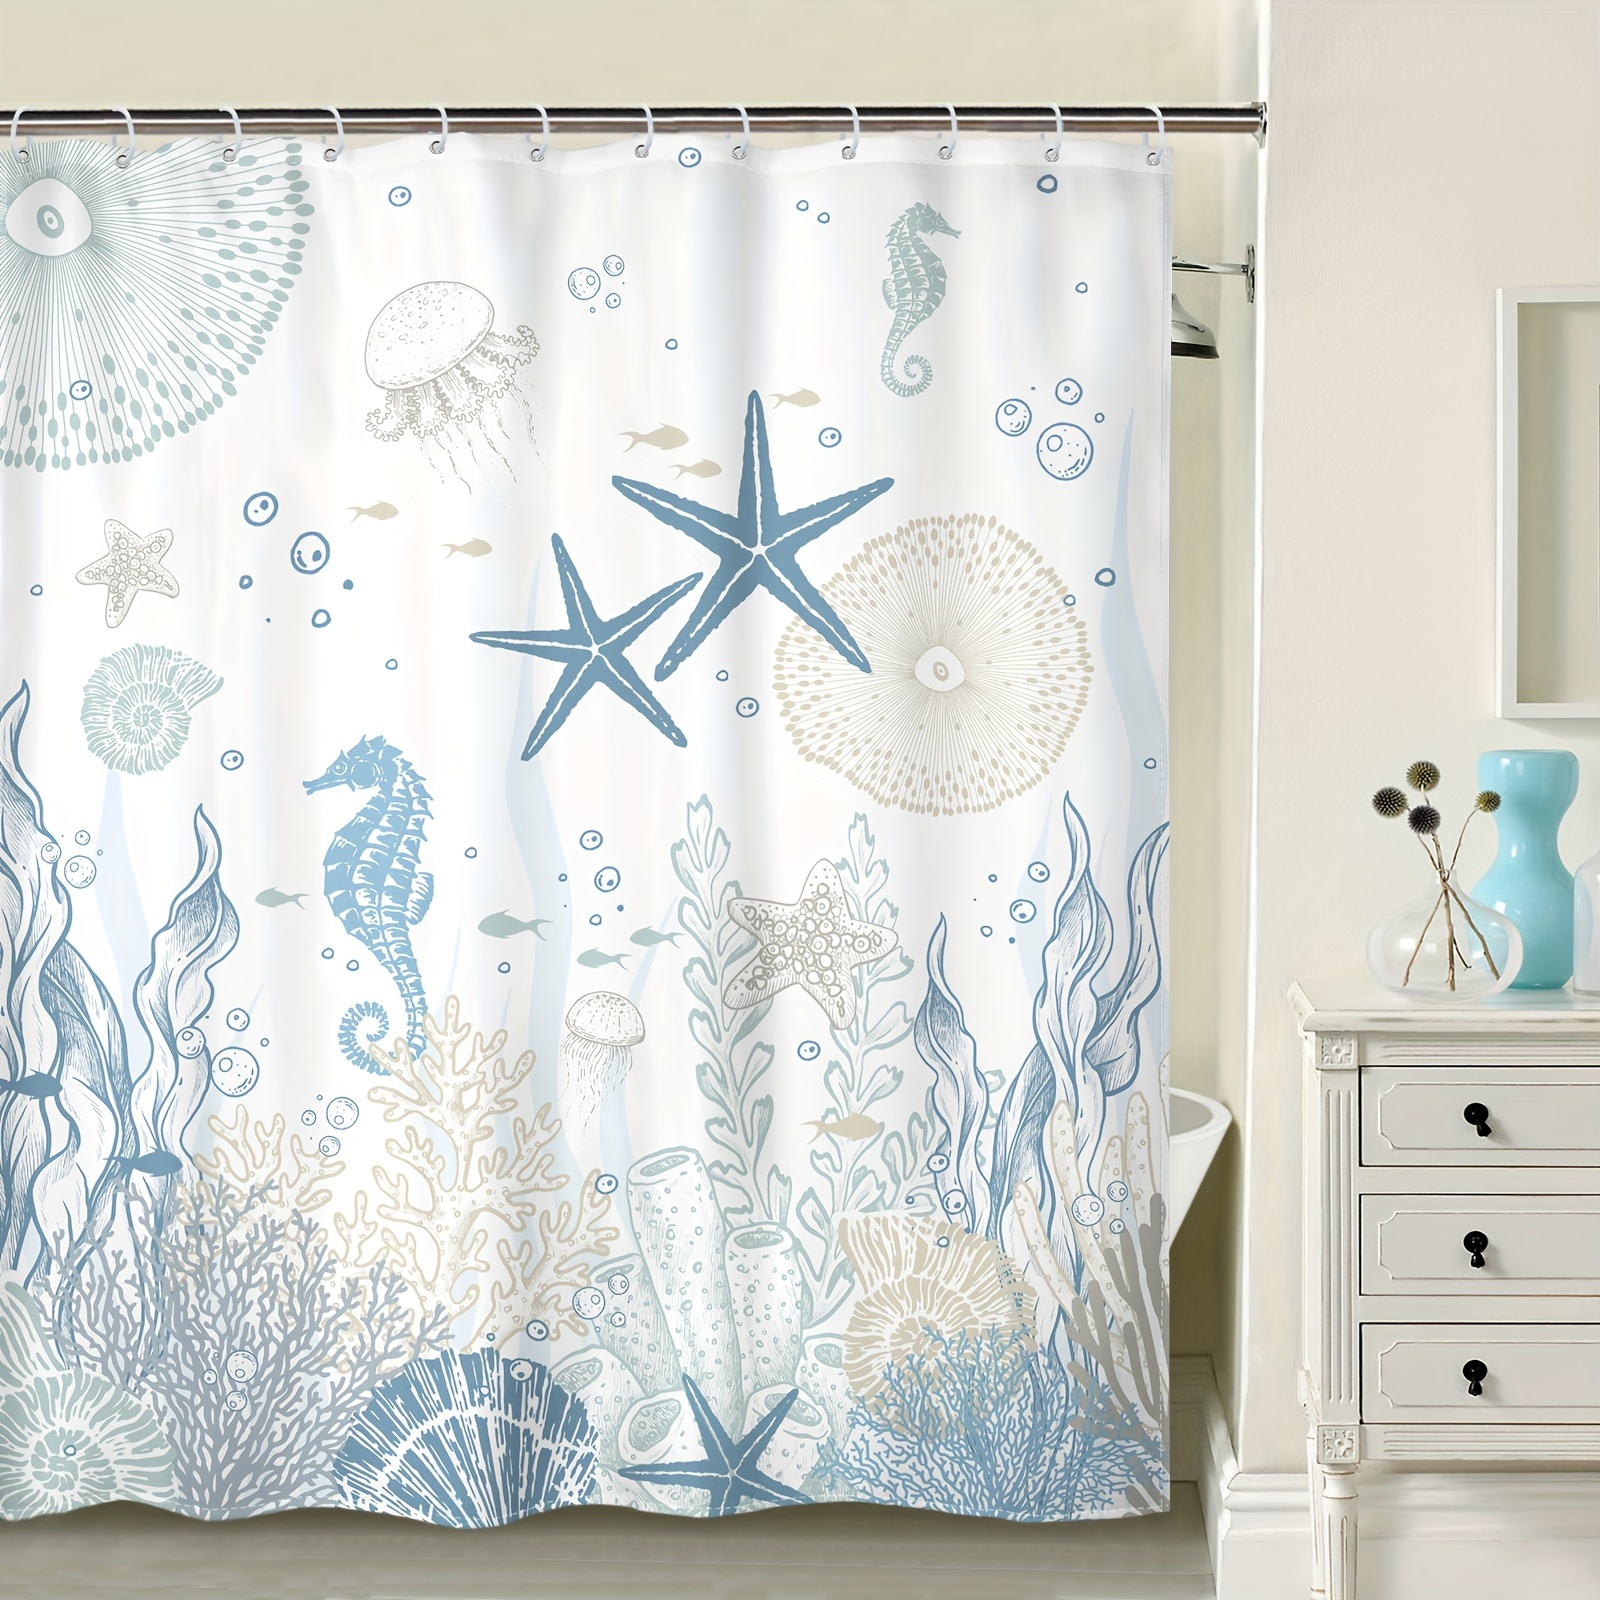 Divertida cortina de ducha de tela de gato para baño, diseño de animales  marinos, pulpo, estrella de mar, tortuga, ancla náutica, peces, juego de